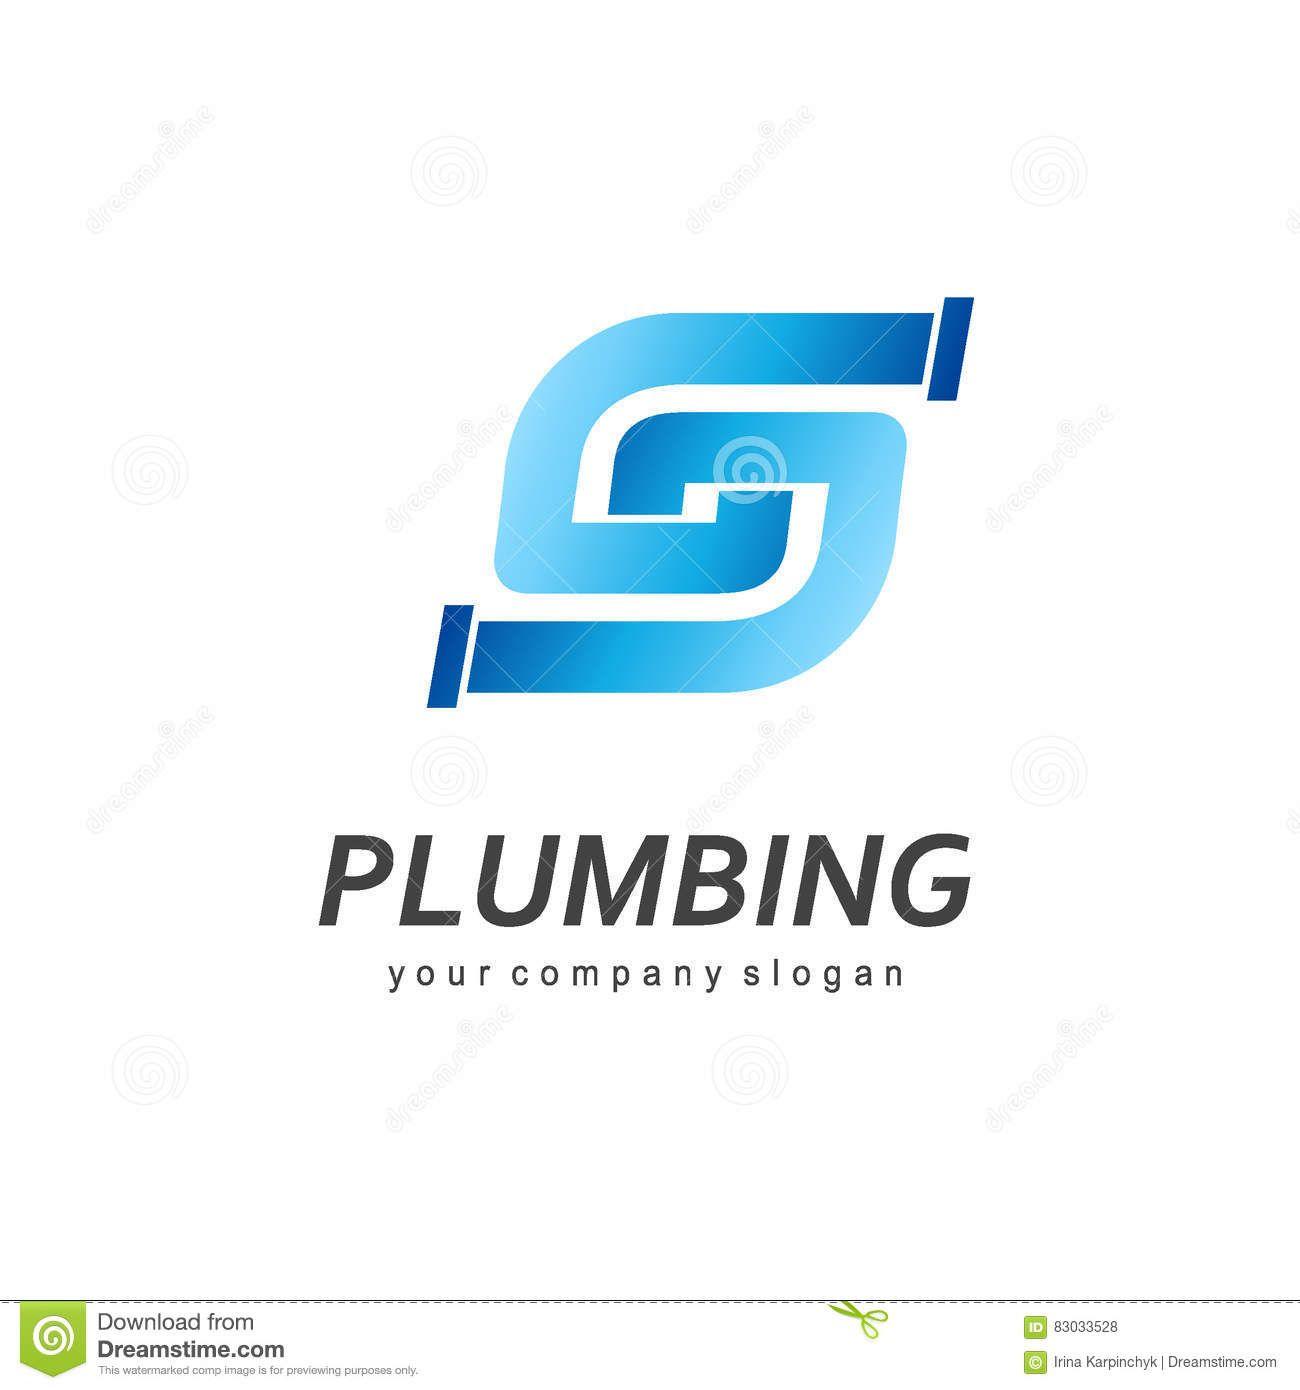 Plumbing Company Logo - Plumbing Logos